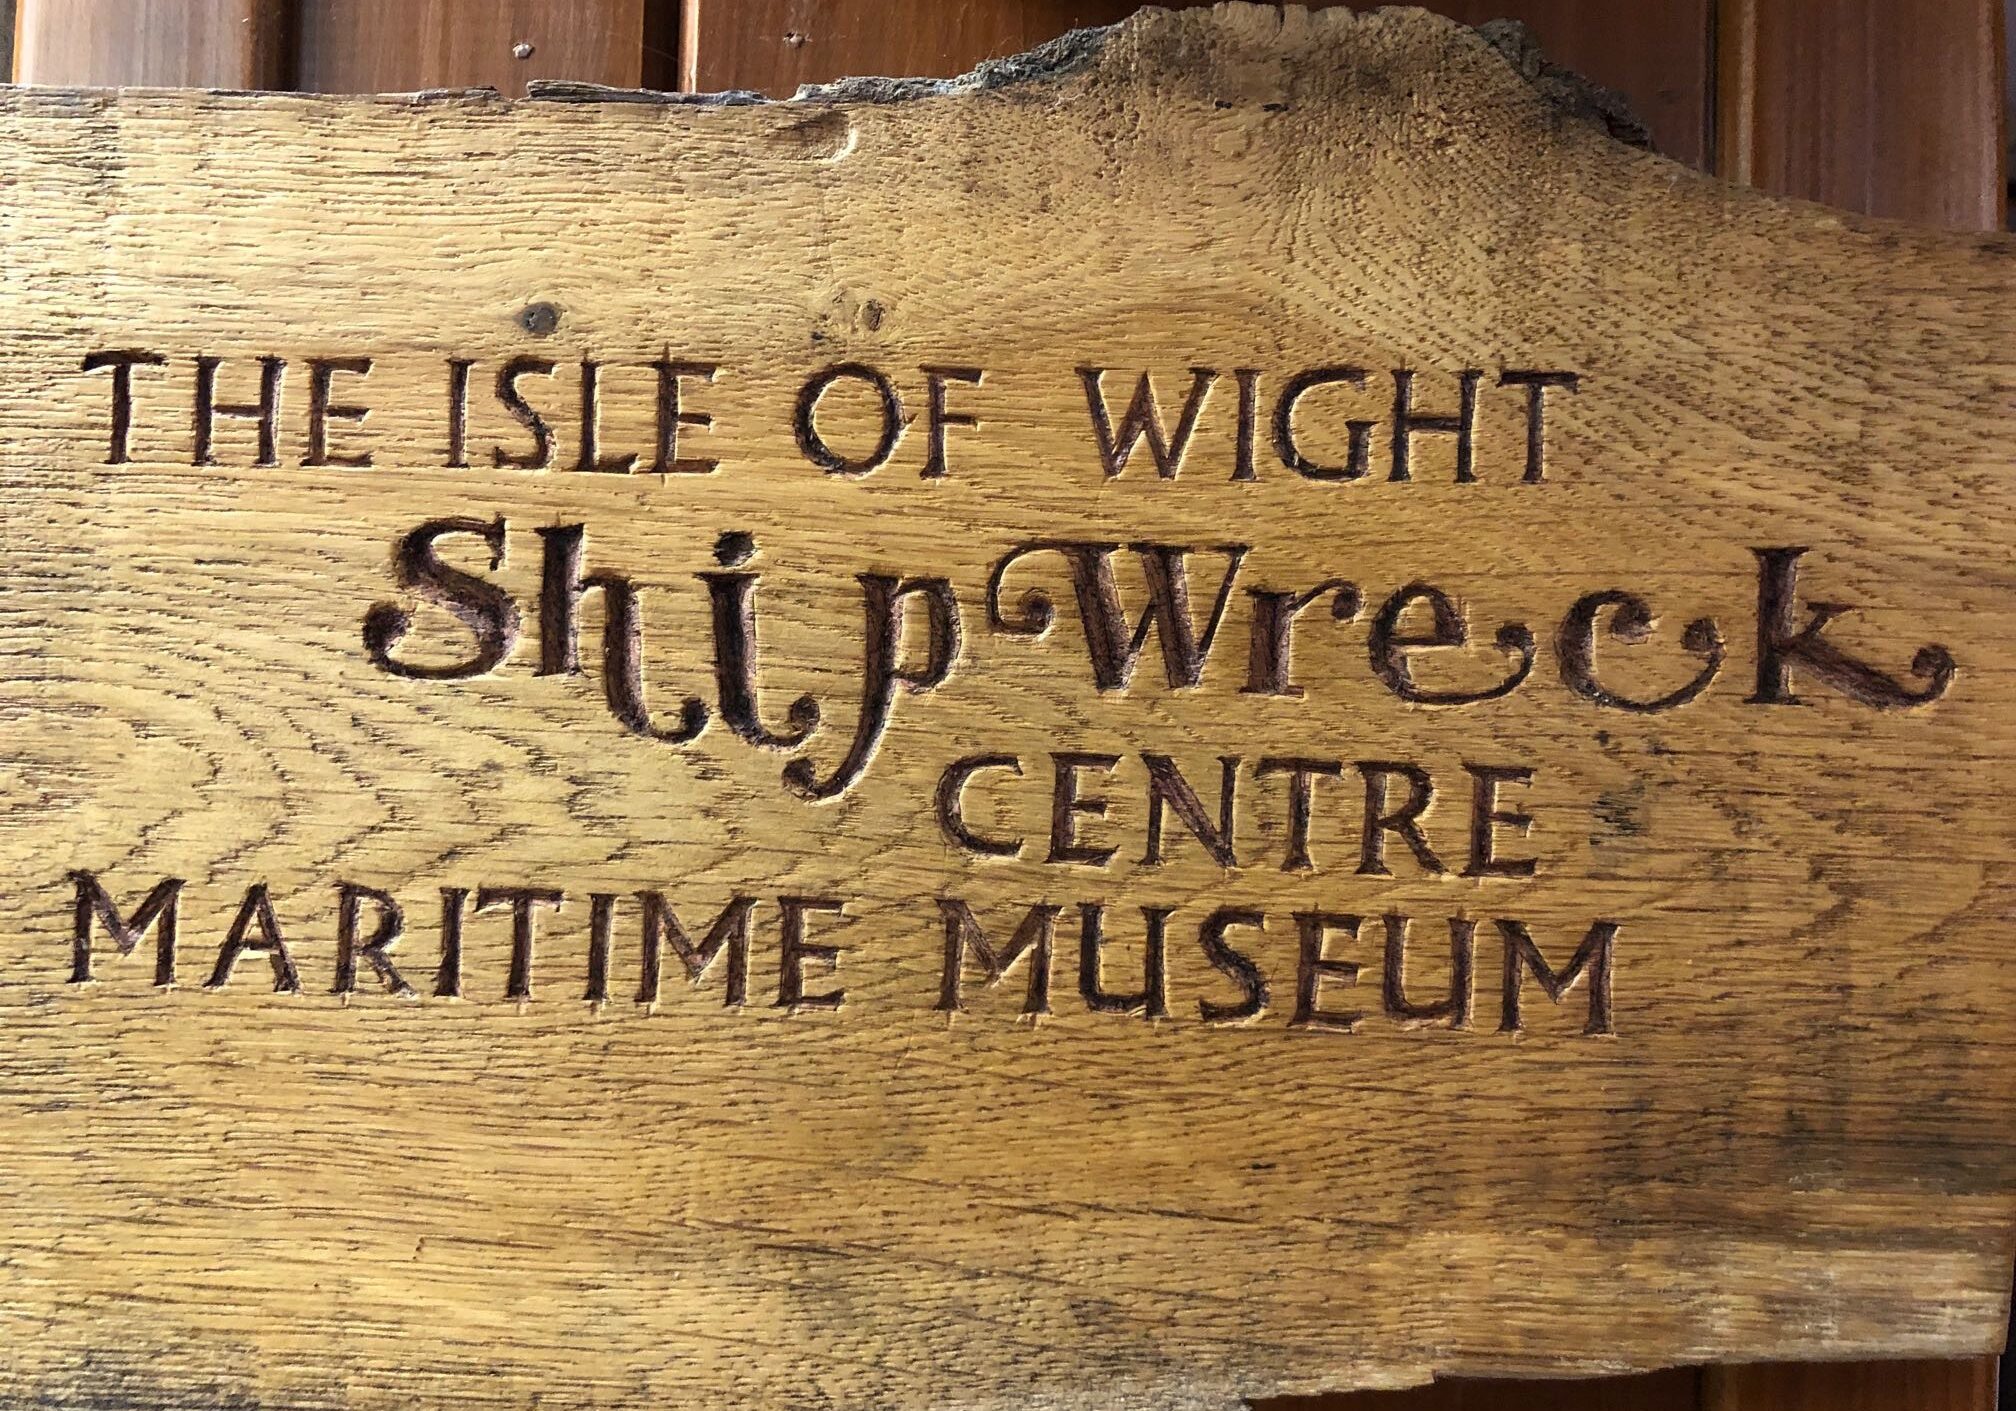 Shipwreck Centre Isle of Wight